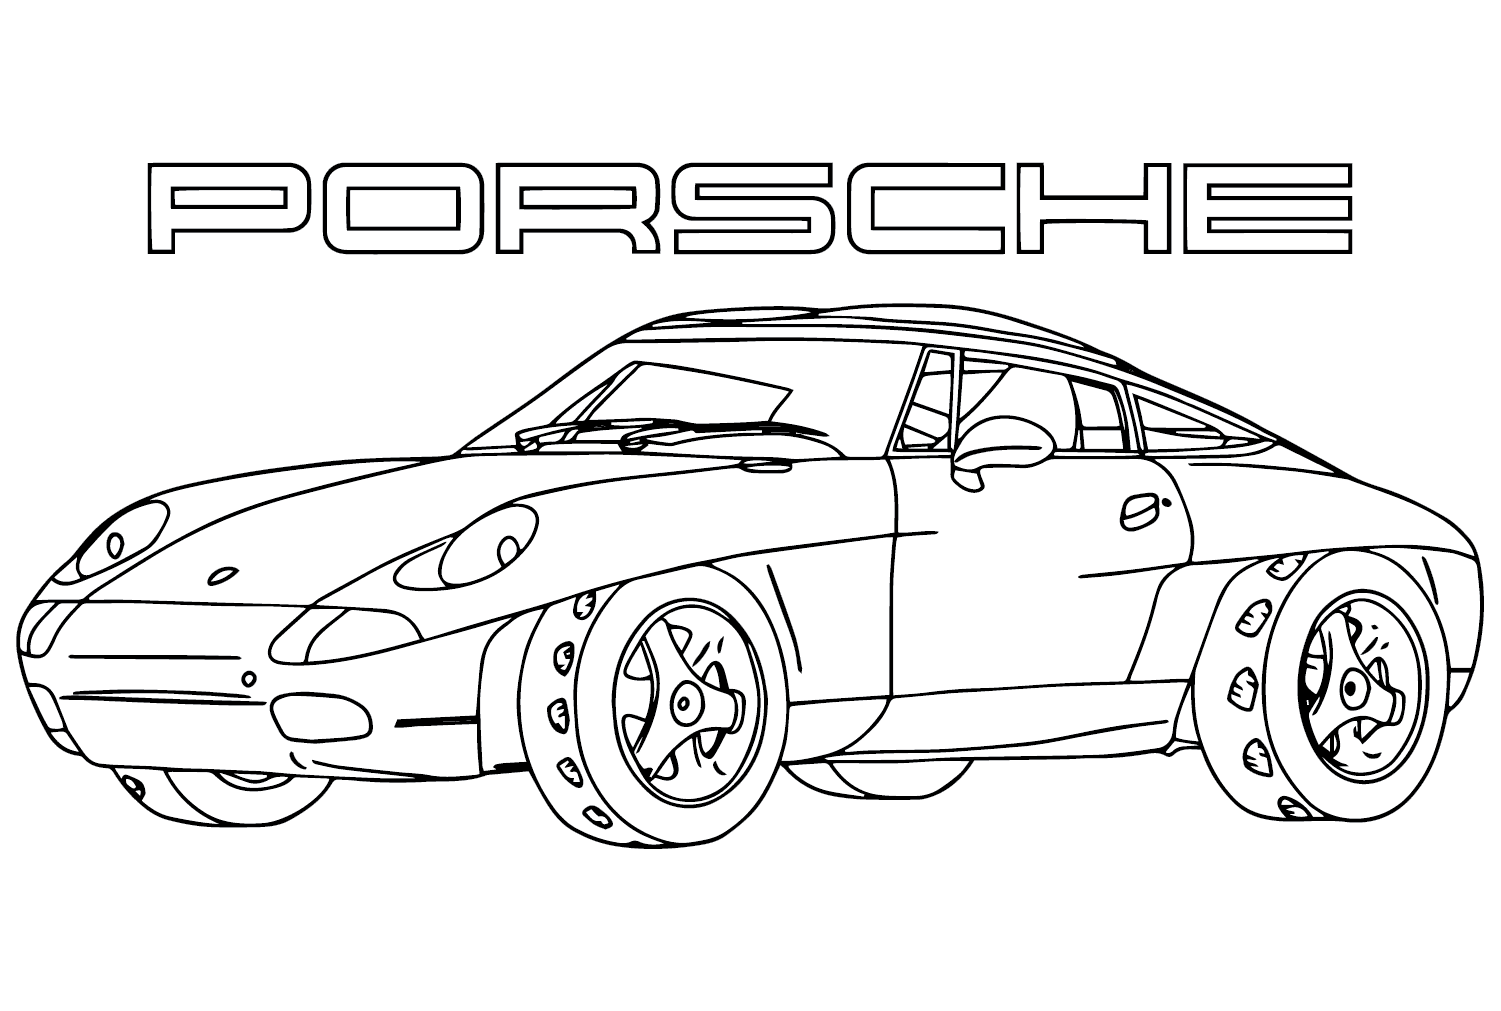 Porsche Panamericana Coloring Page from Porsche